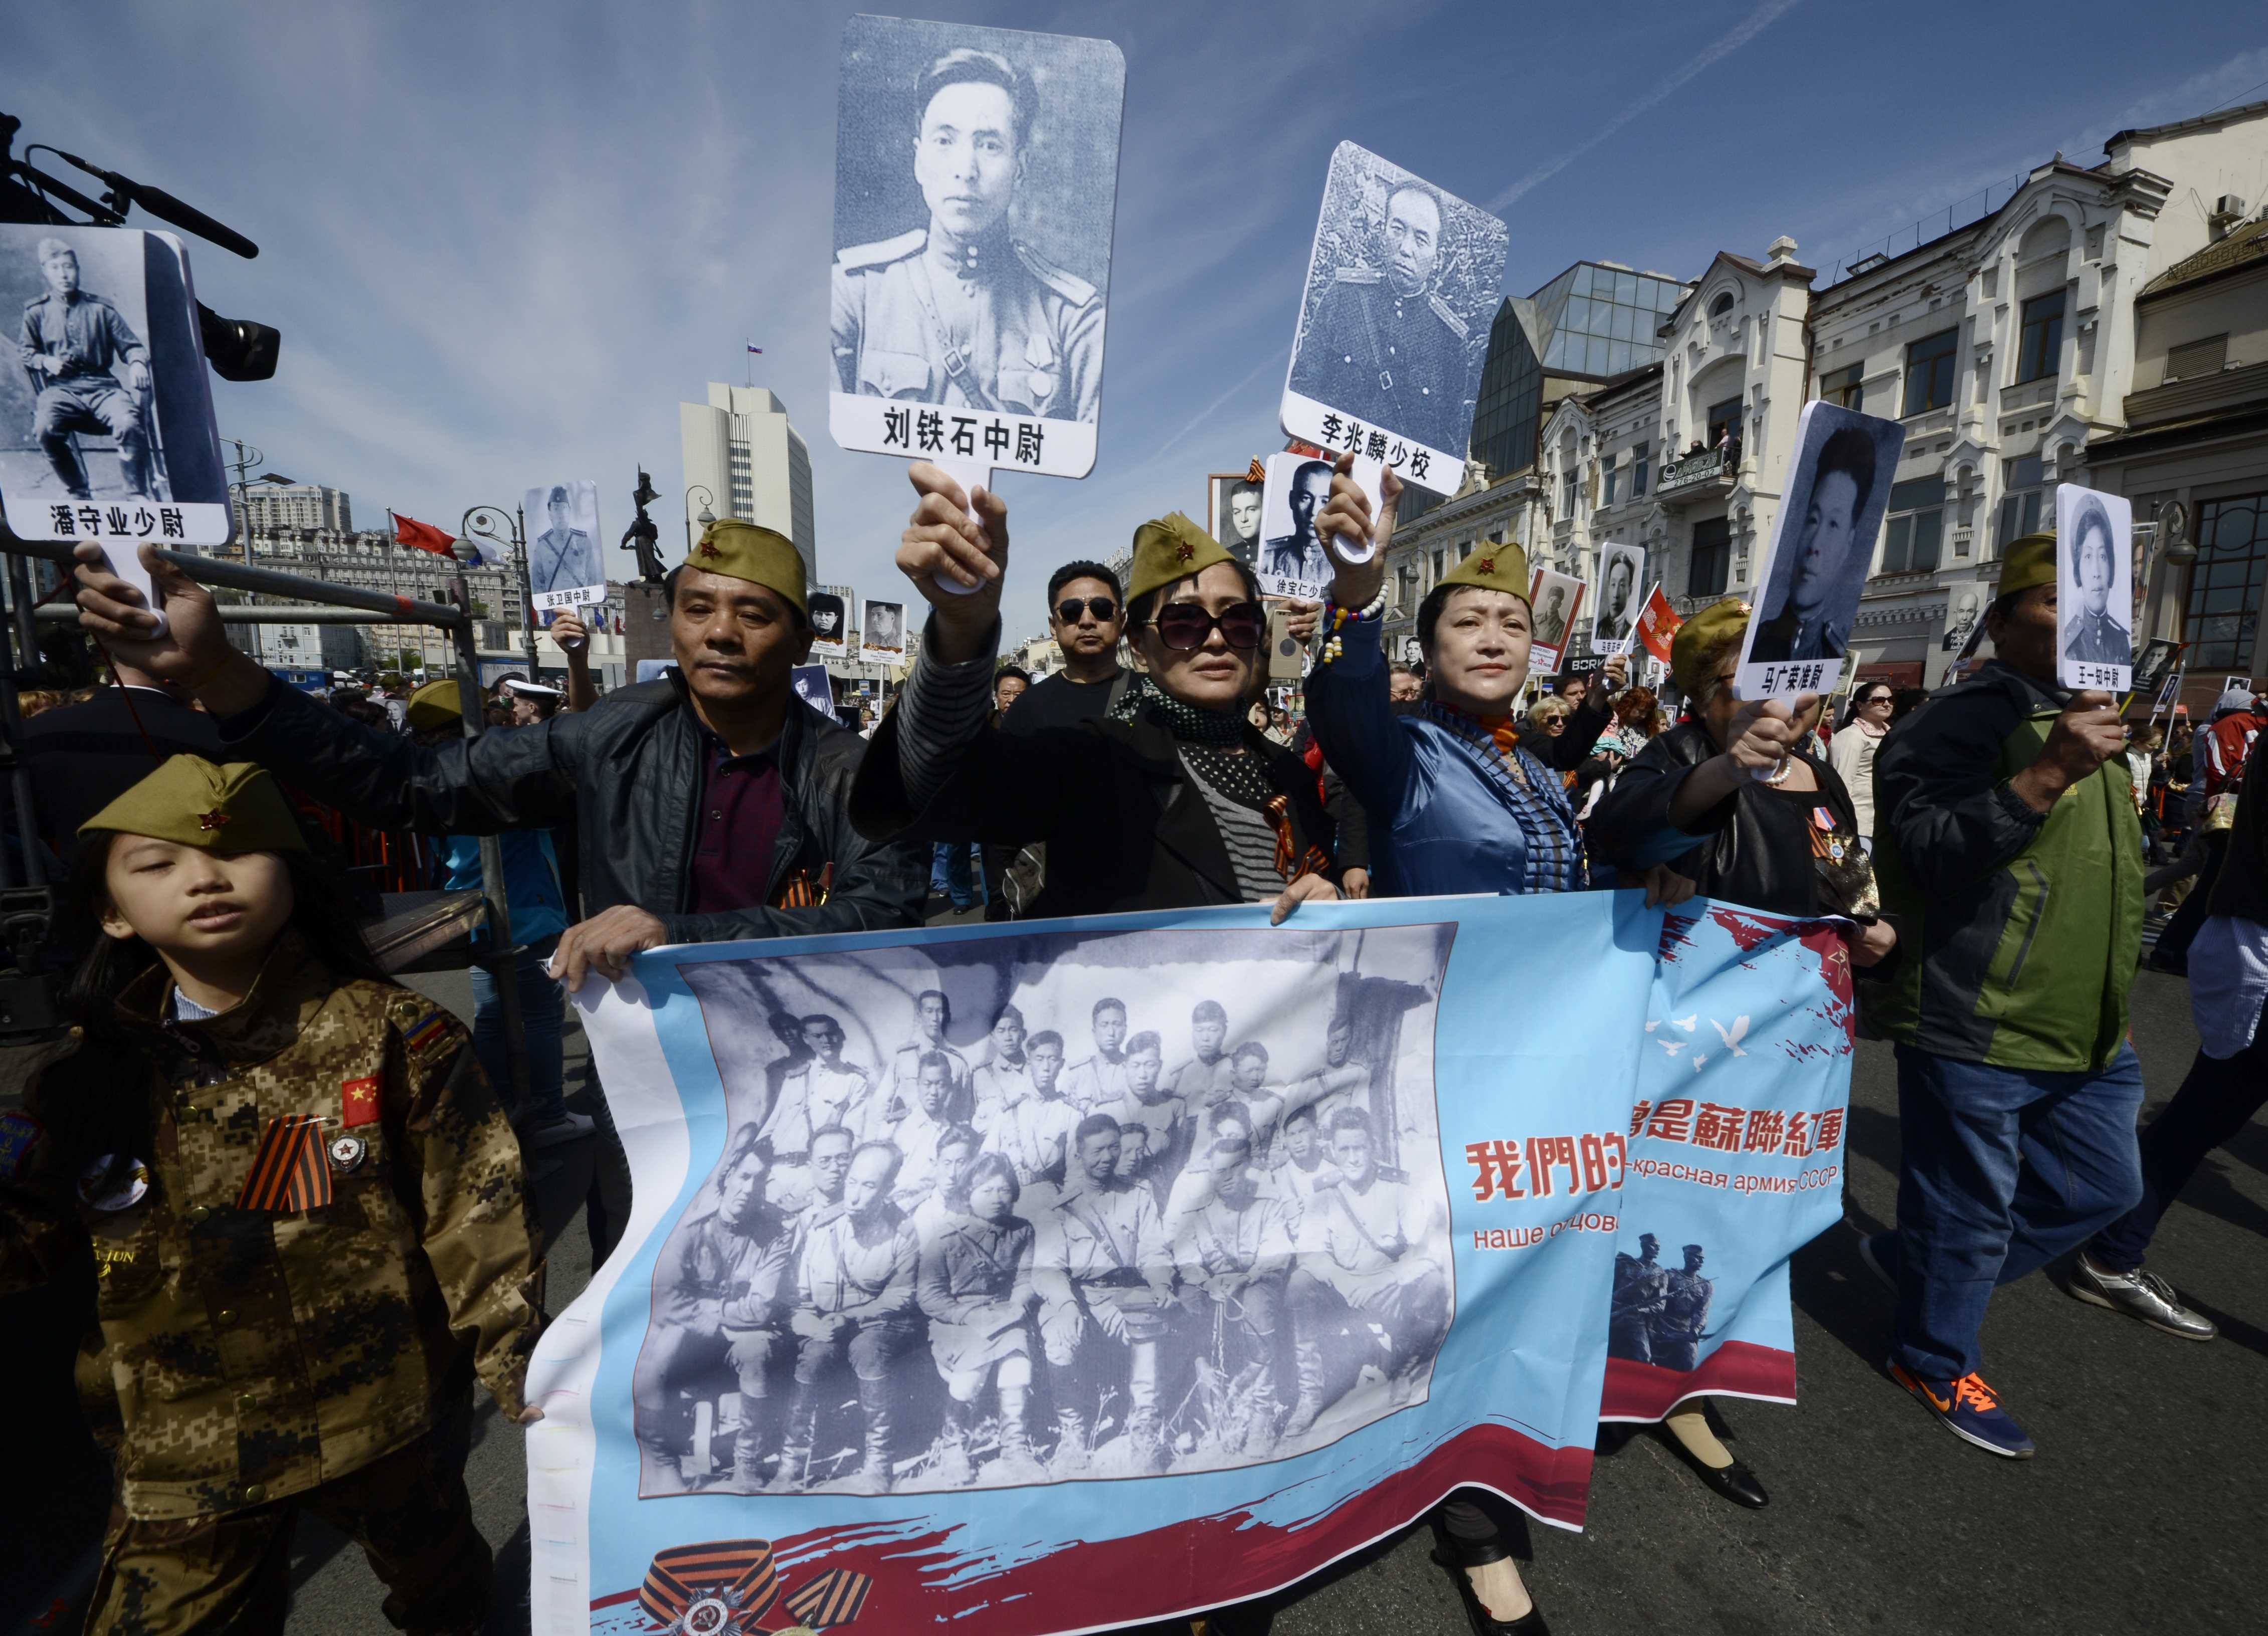 المواطنون يحتشدون للاحتفال بعيد النصر فى روسيا